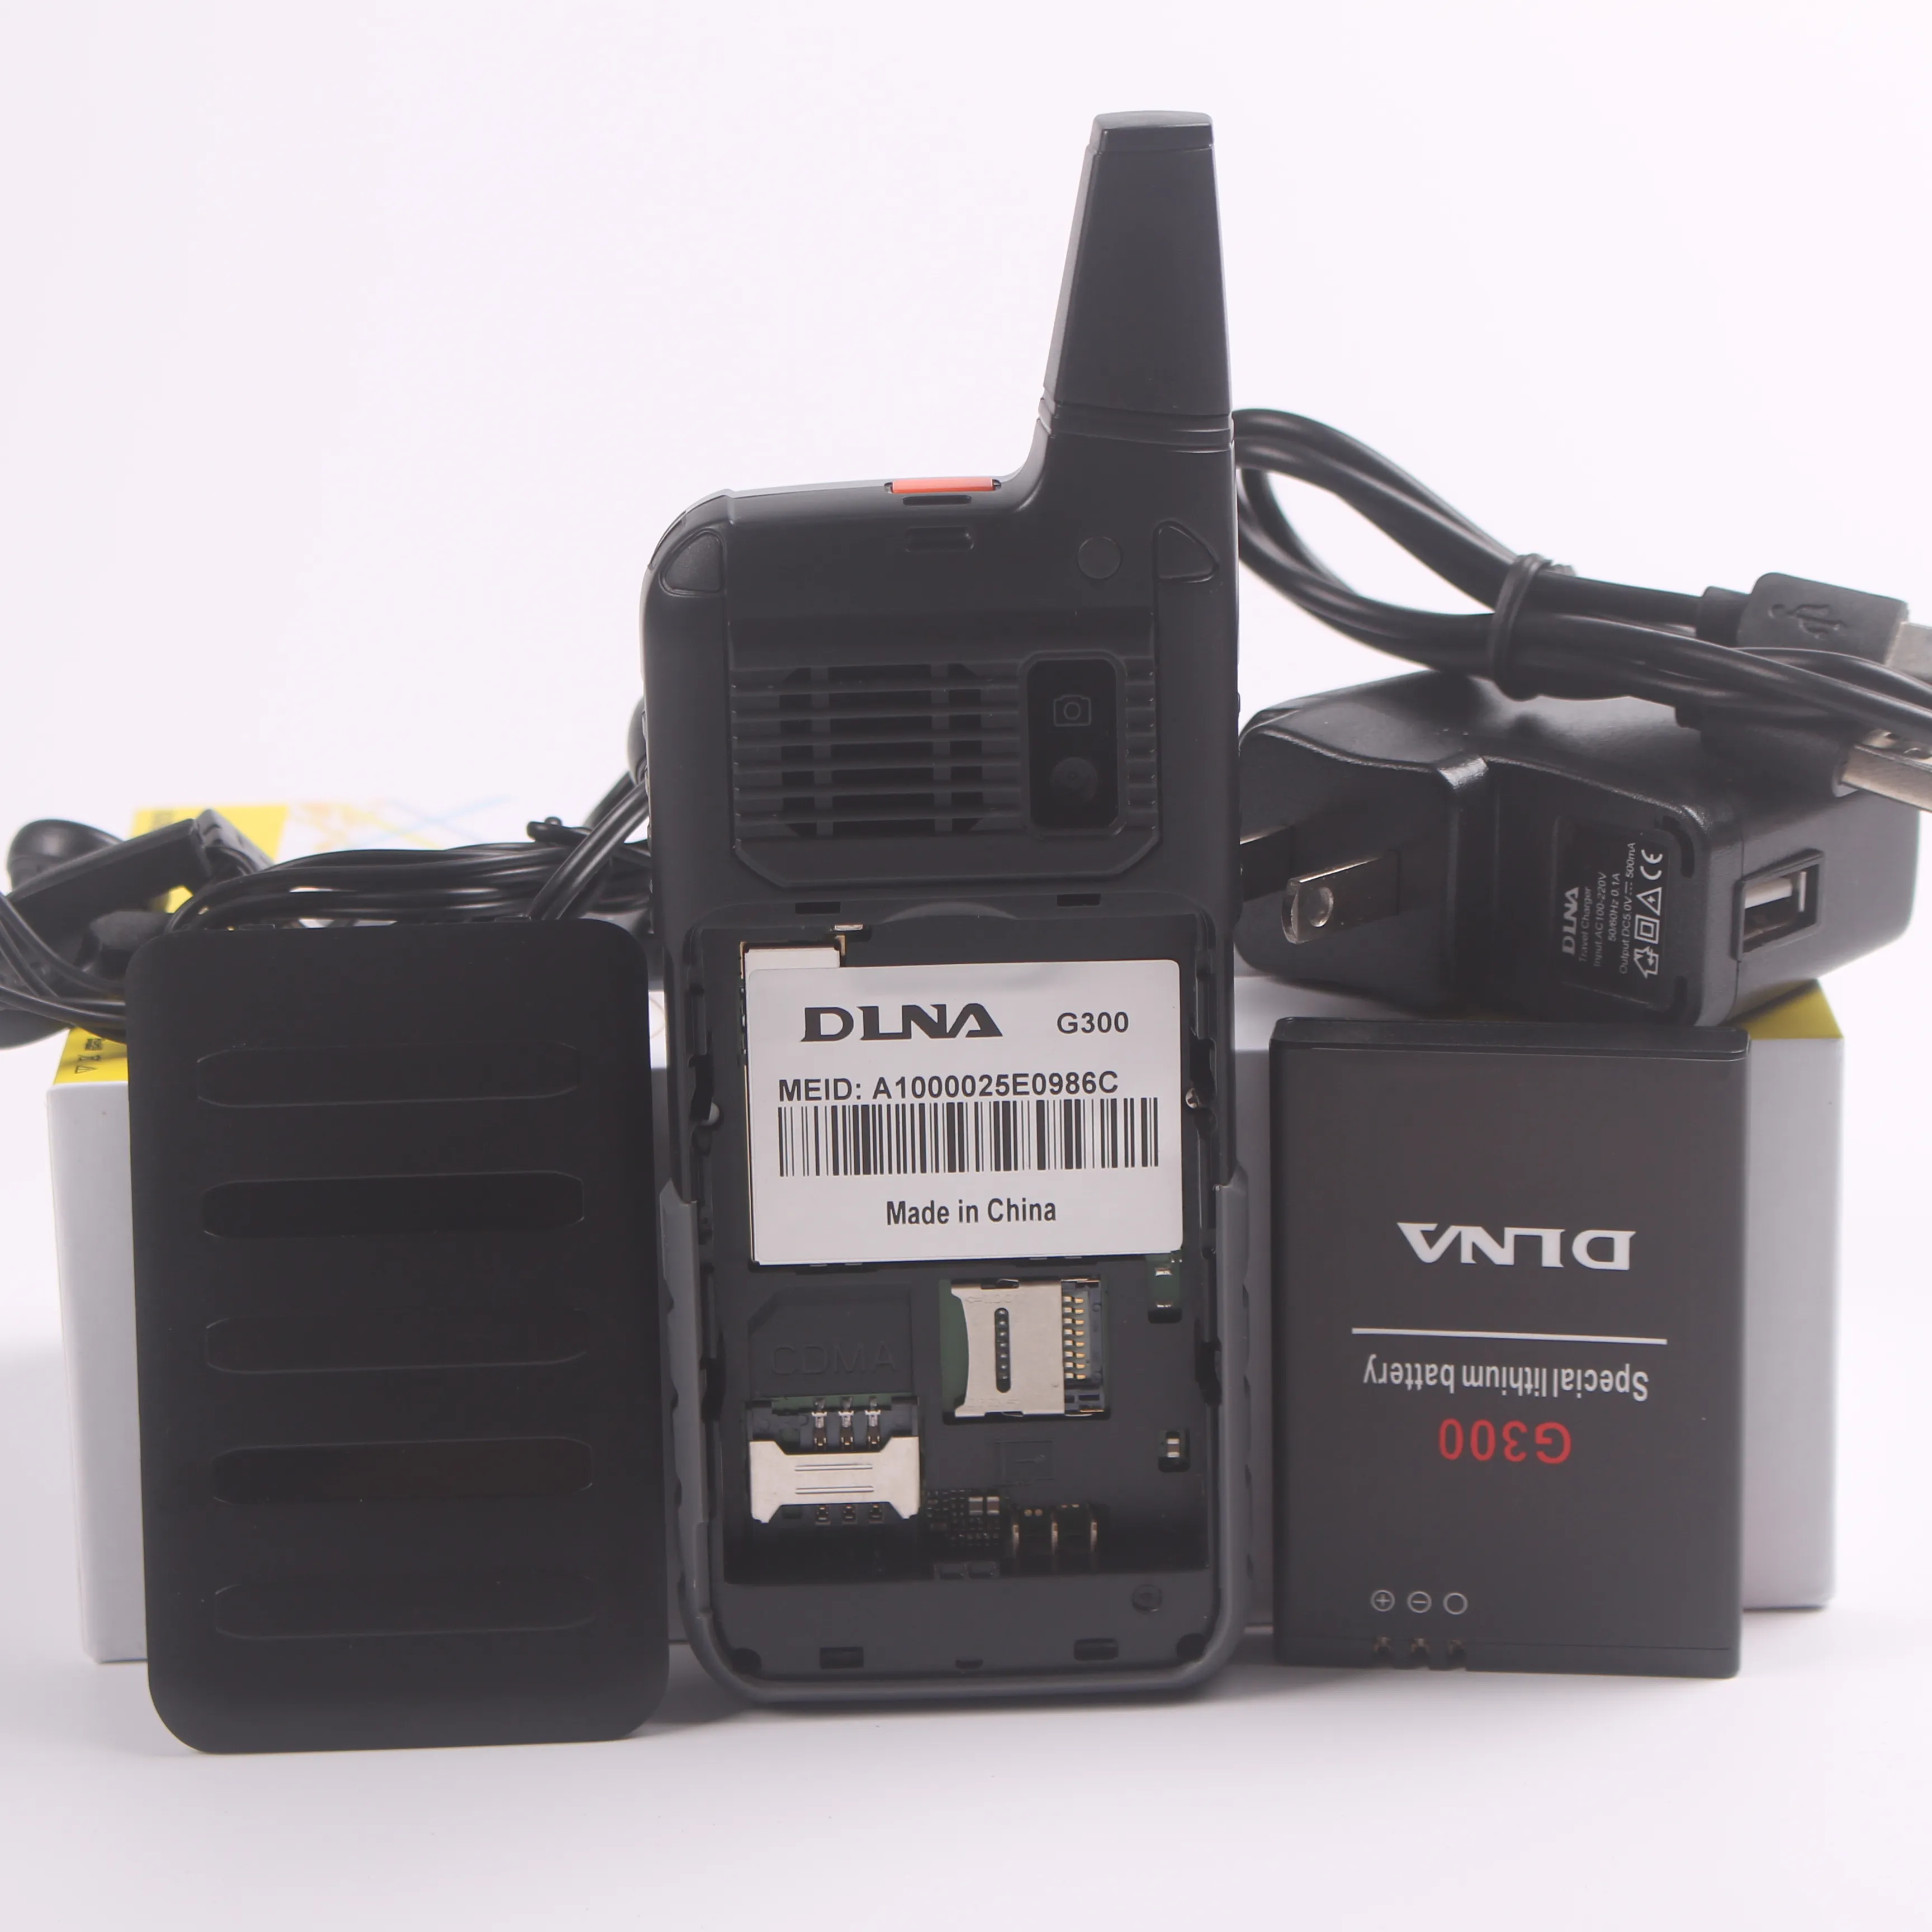 뜨거운 판매 저렴한 CDMA450MHz 휴대 전화 DLNA G300 강력한 신호 큰 배터리